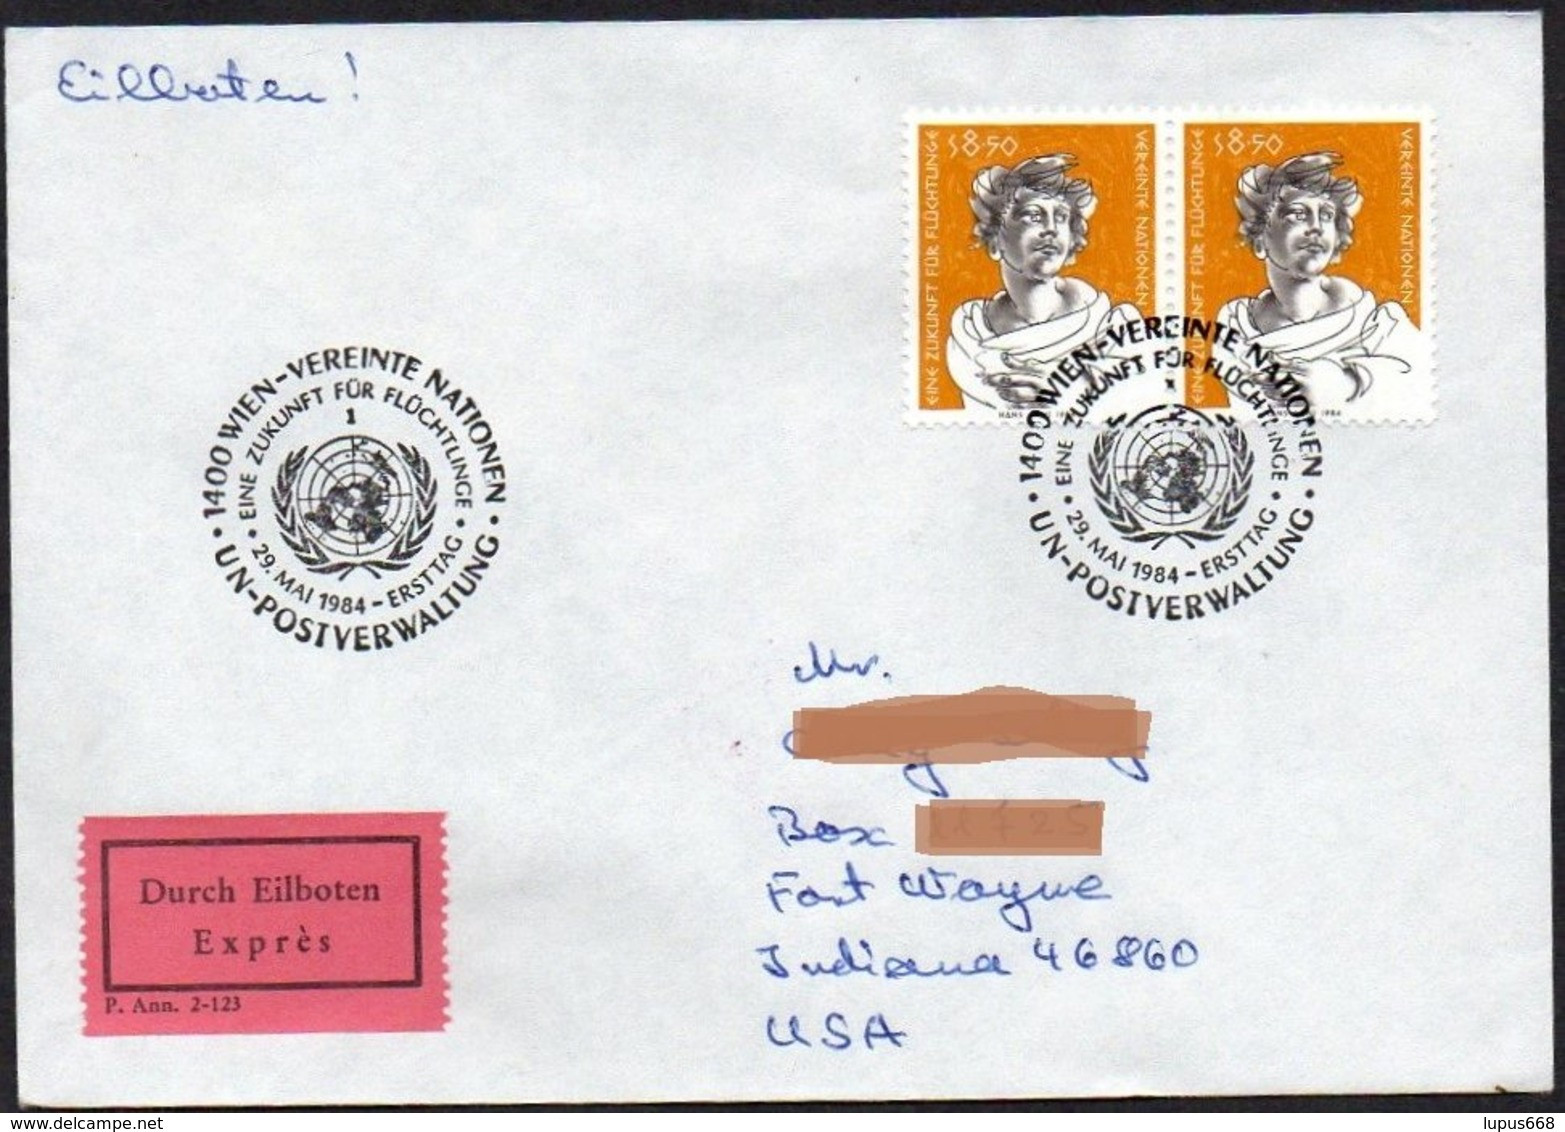 UNO - Wien  1984  MiNr. 44 (2)  Auf Express - Brief In Die U.S.A  ,  FDC; Eine Zukunft Für Flüchtlinge - Cartas & Documentos